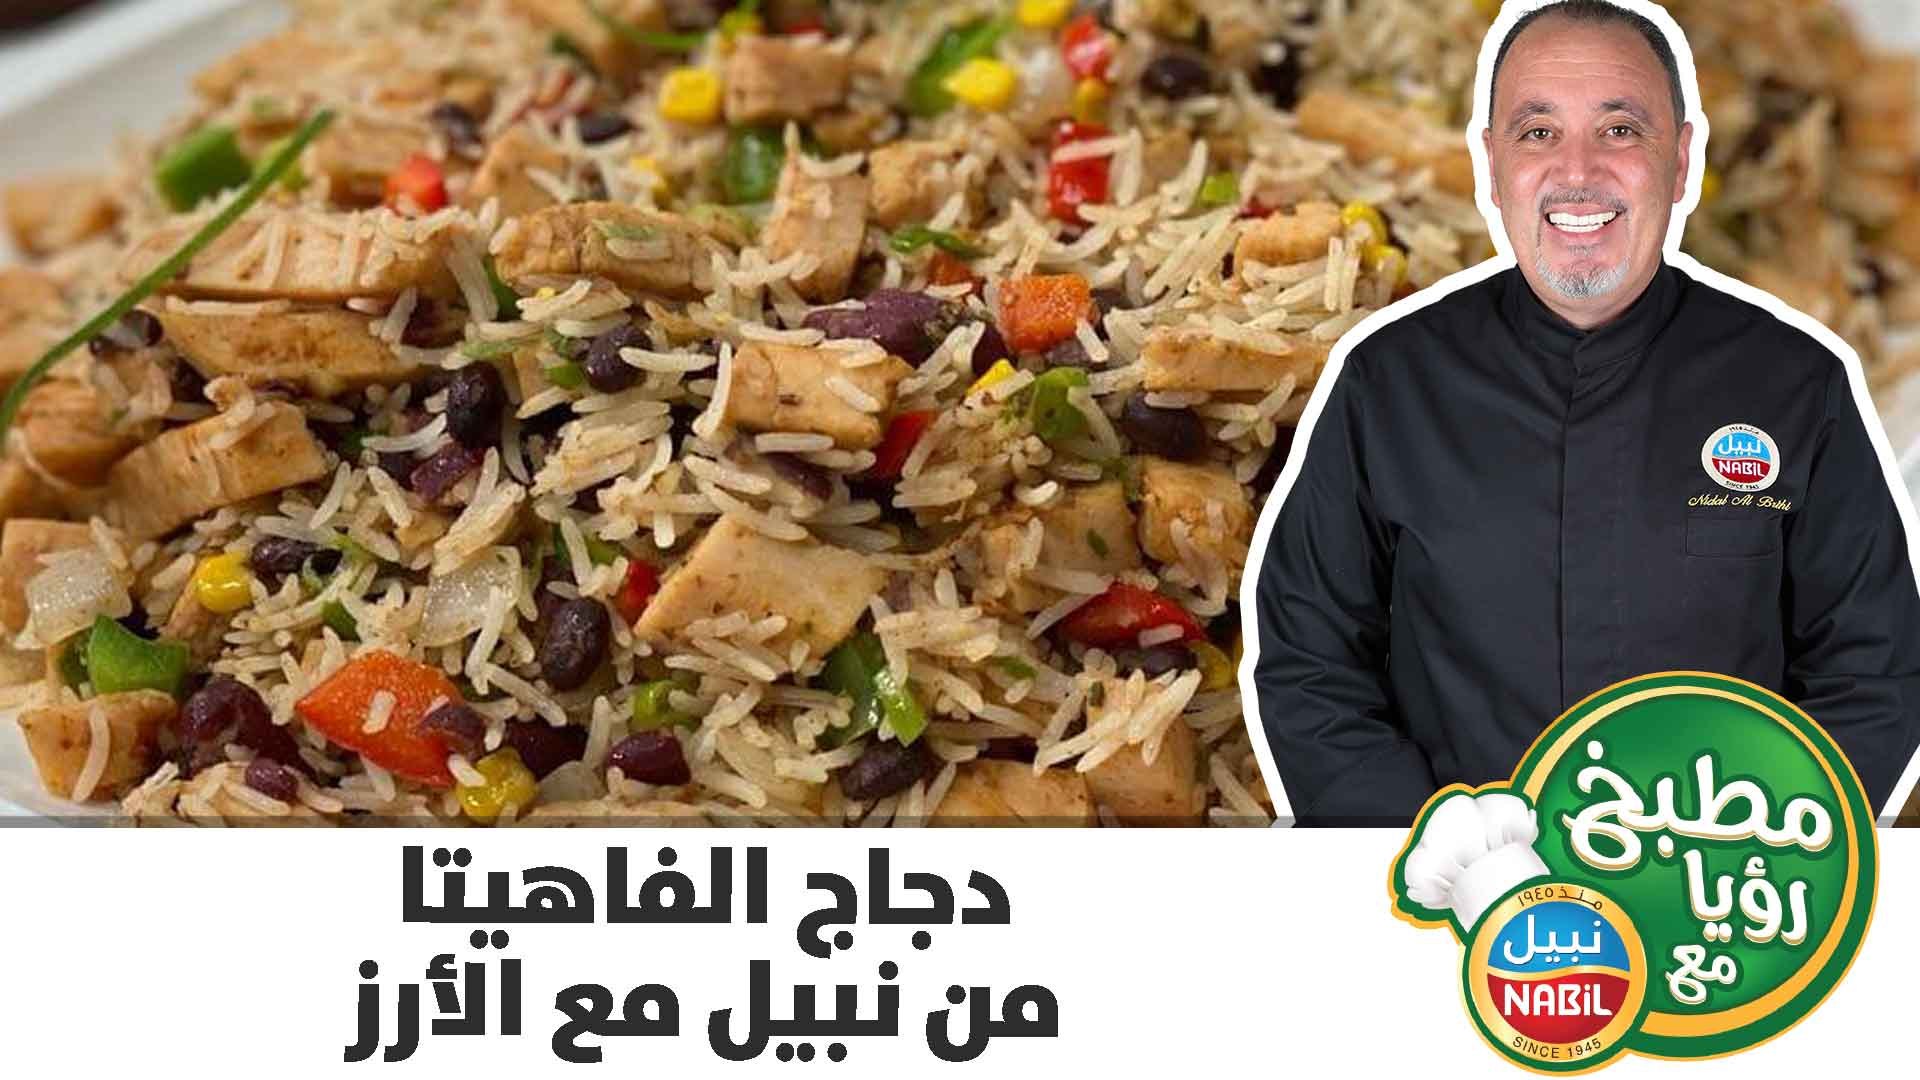 دجاج الفاهيتا من نبيل مع الأرز على طريقة الشيف نضال البريحي - فيديو  Dailymotion